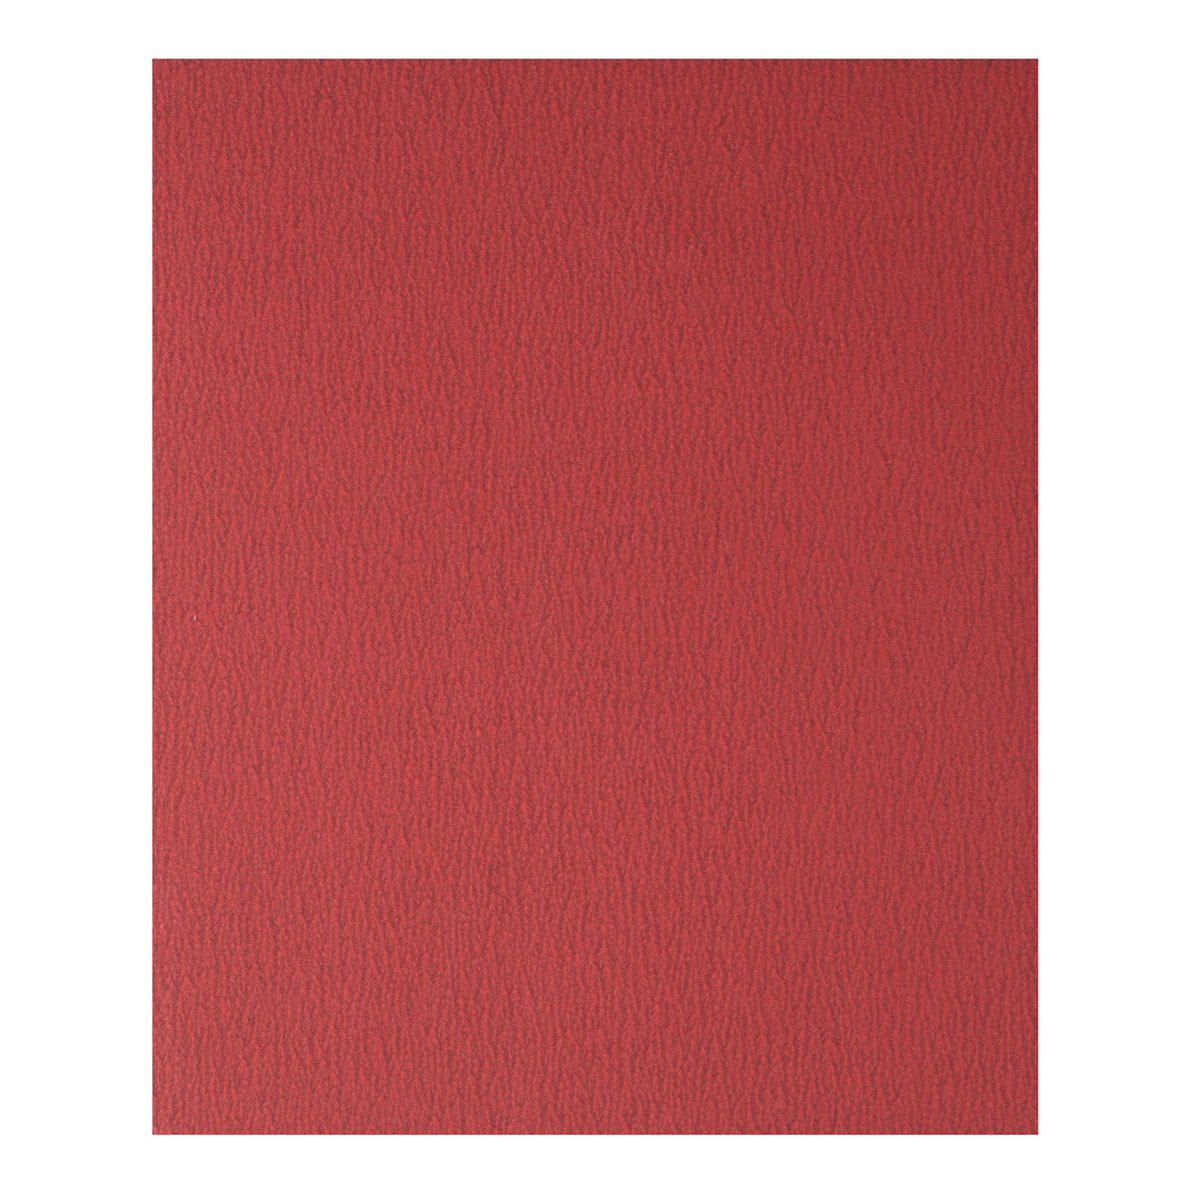 Handschleifblatt K240, 230x280mm, rot